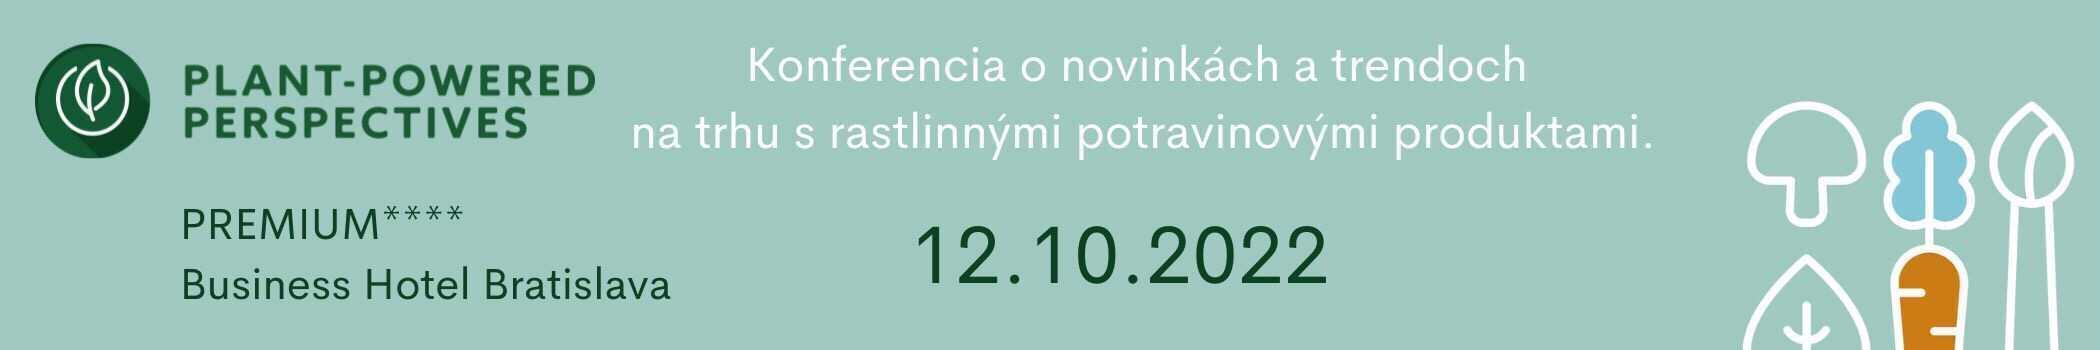 Banner s informáciami o konferencii Plant-powered Perspectives Slovakia 2022 o novinkach a trendoch v oblasti rastlinných potravinových produktov